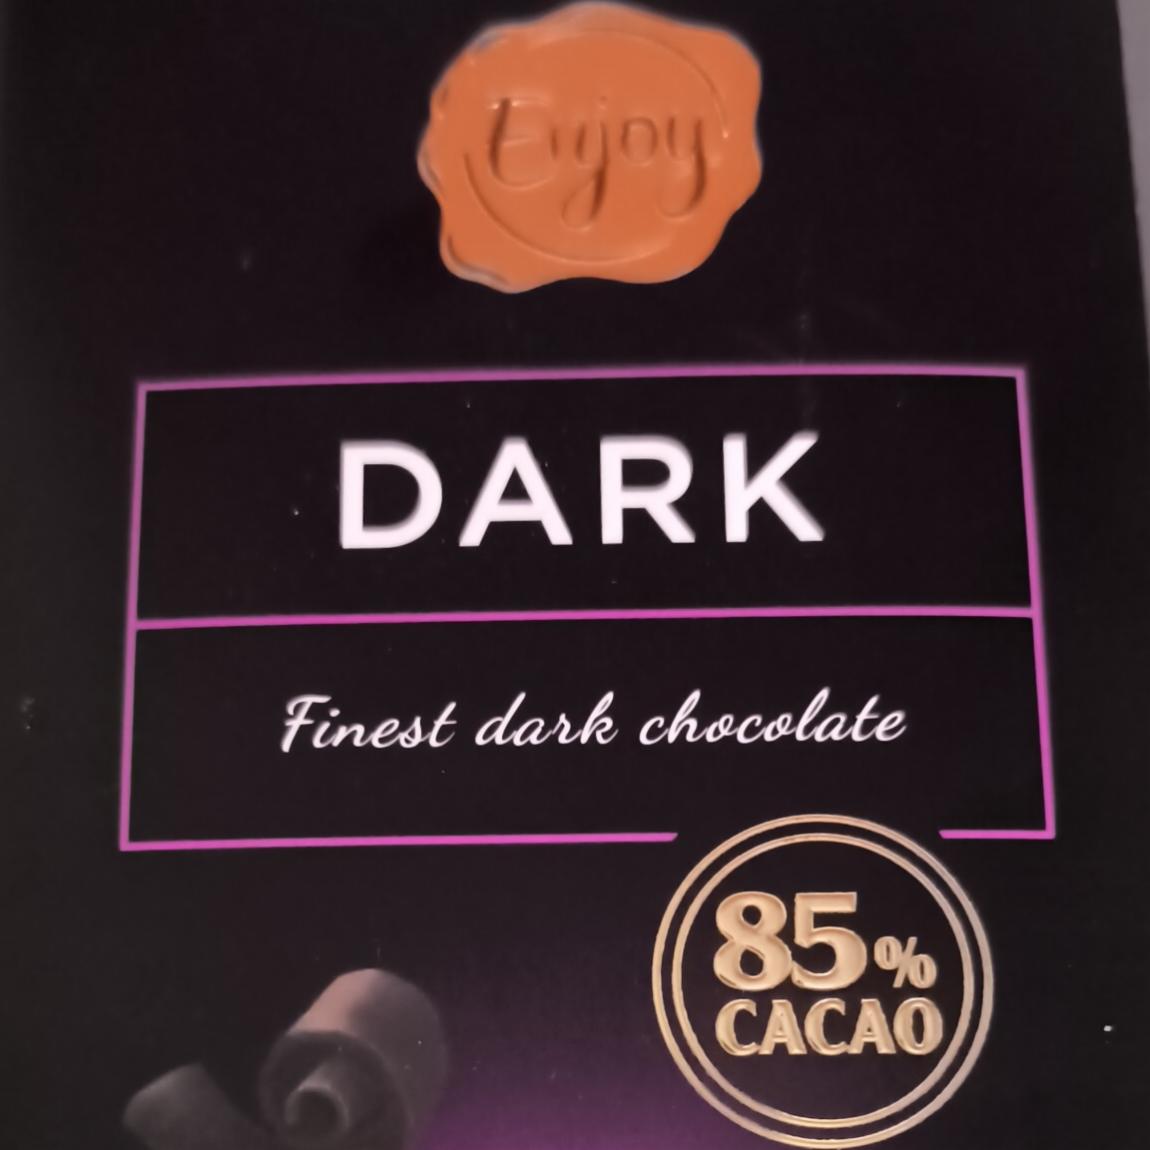 Fotografie - Finest dark chocolate 85% cacao Enjoy